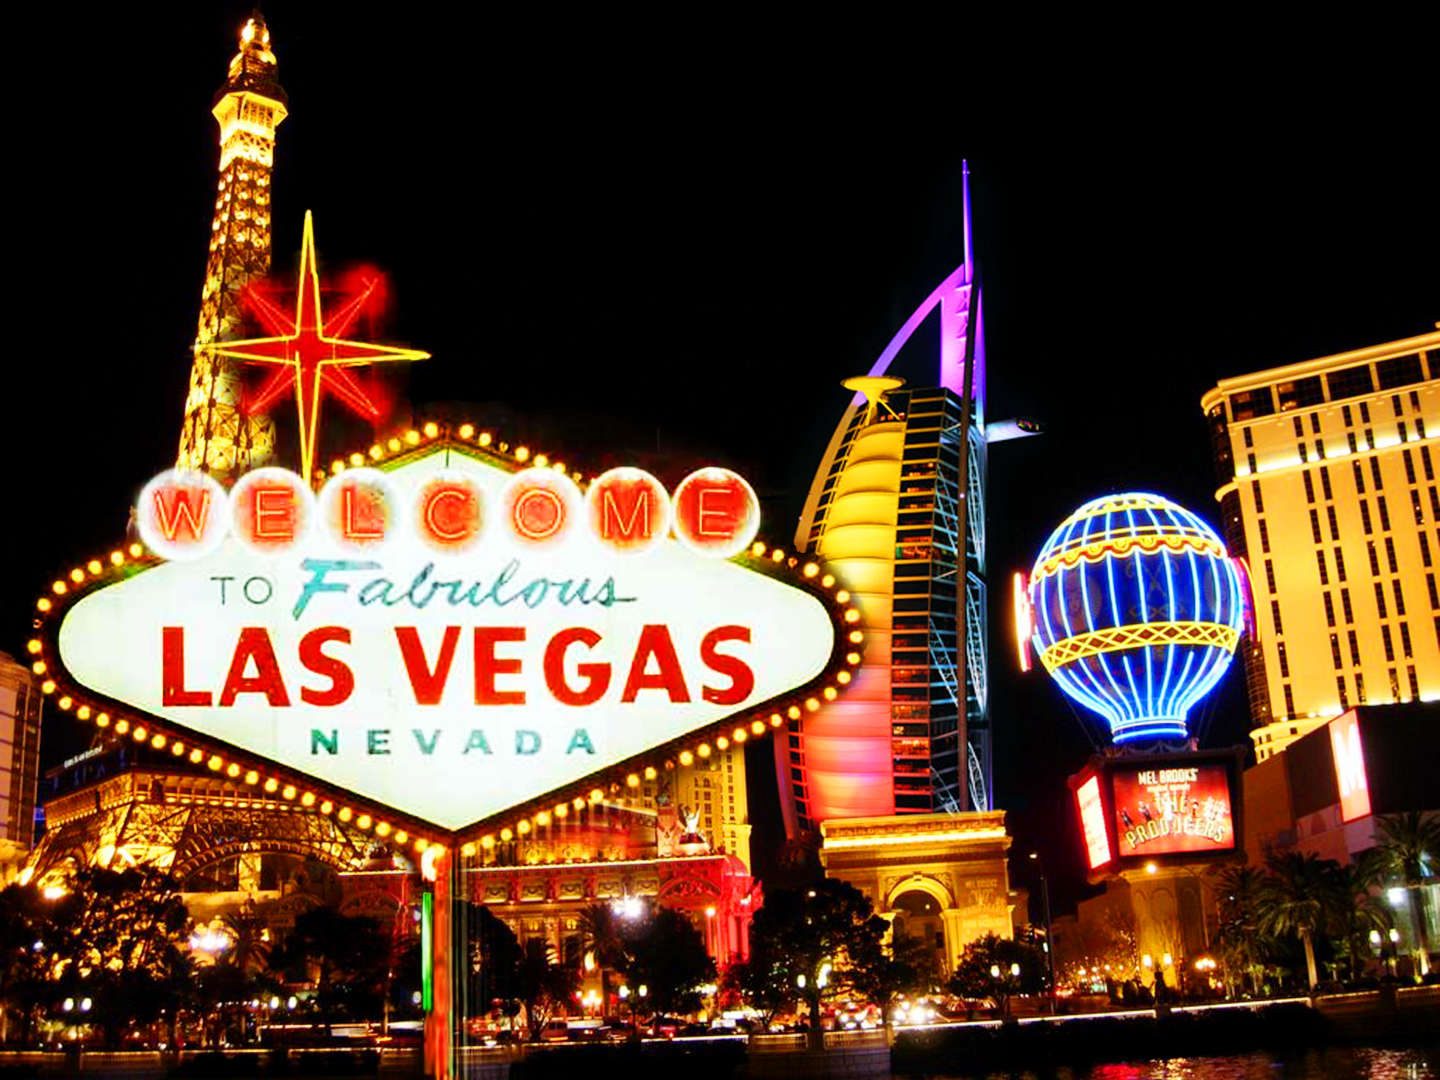 Лас-Вегас, знаменитые казино и копии достопримечательностей других стран